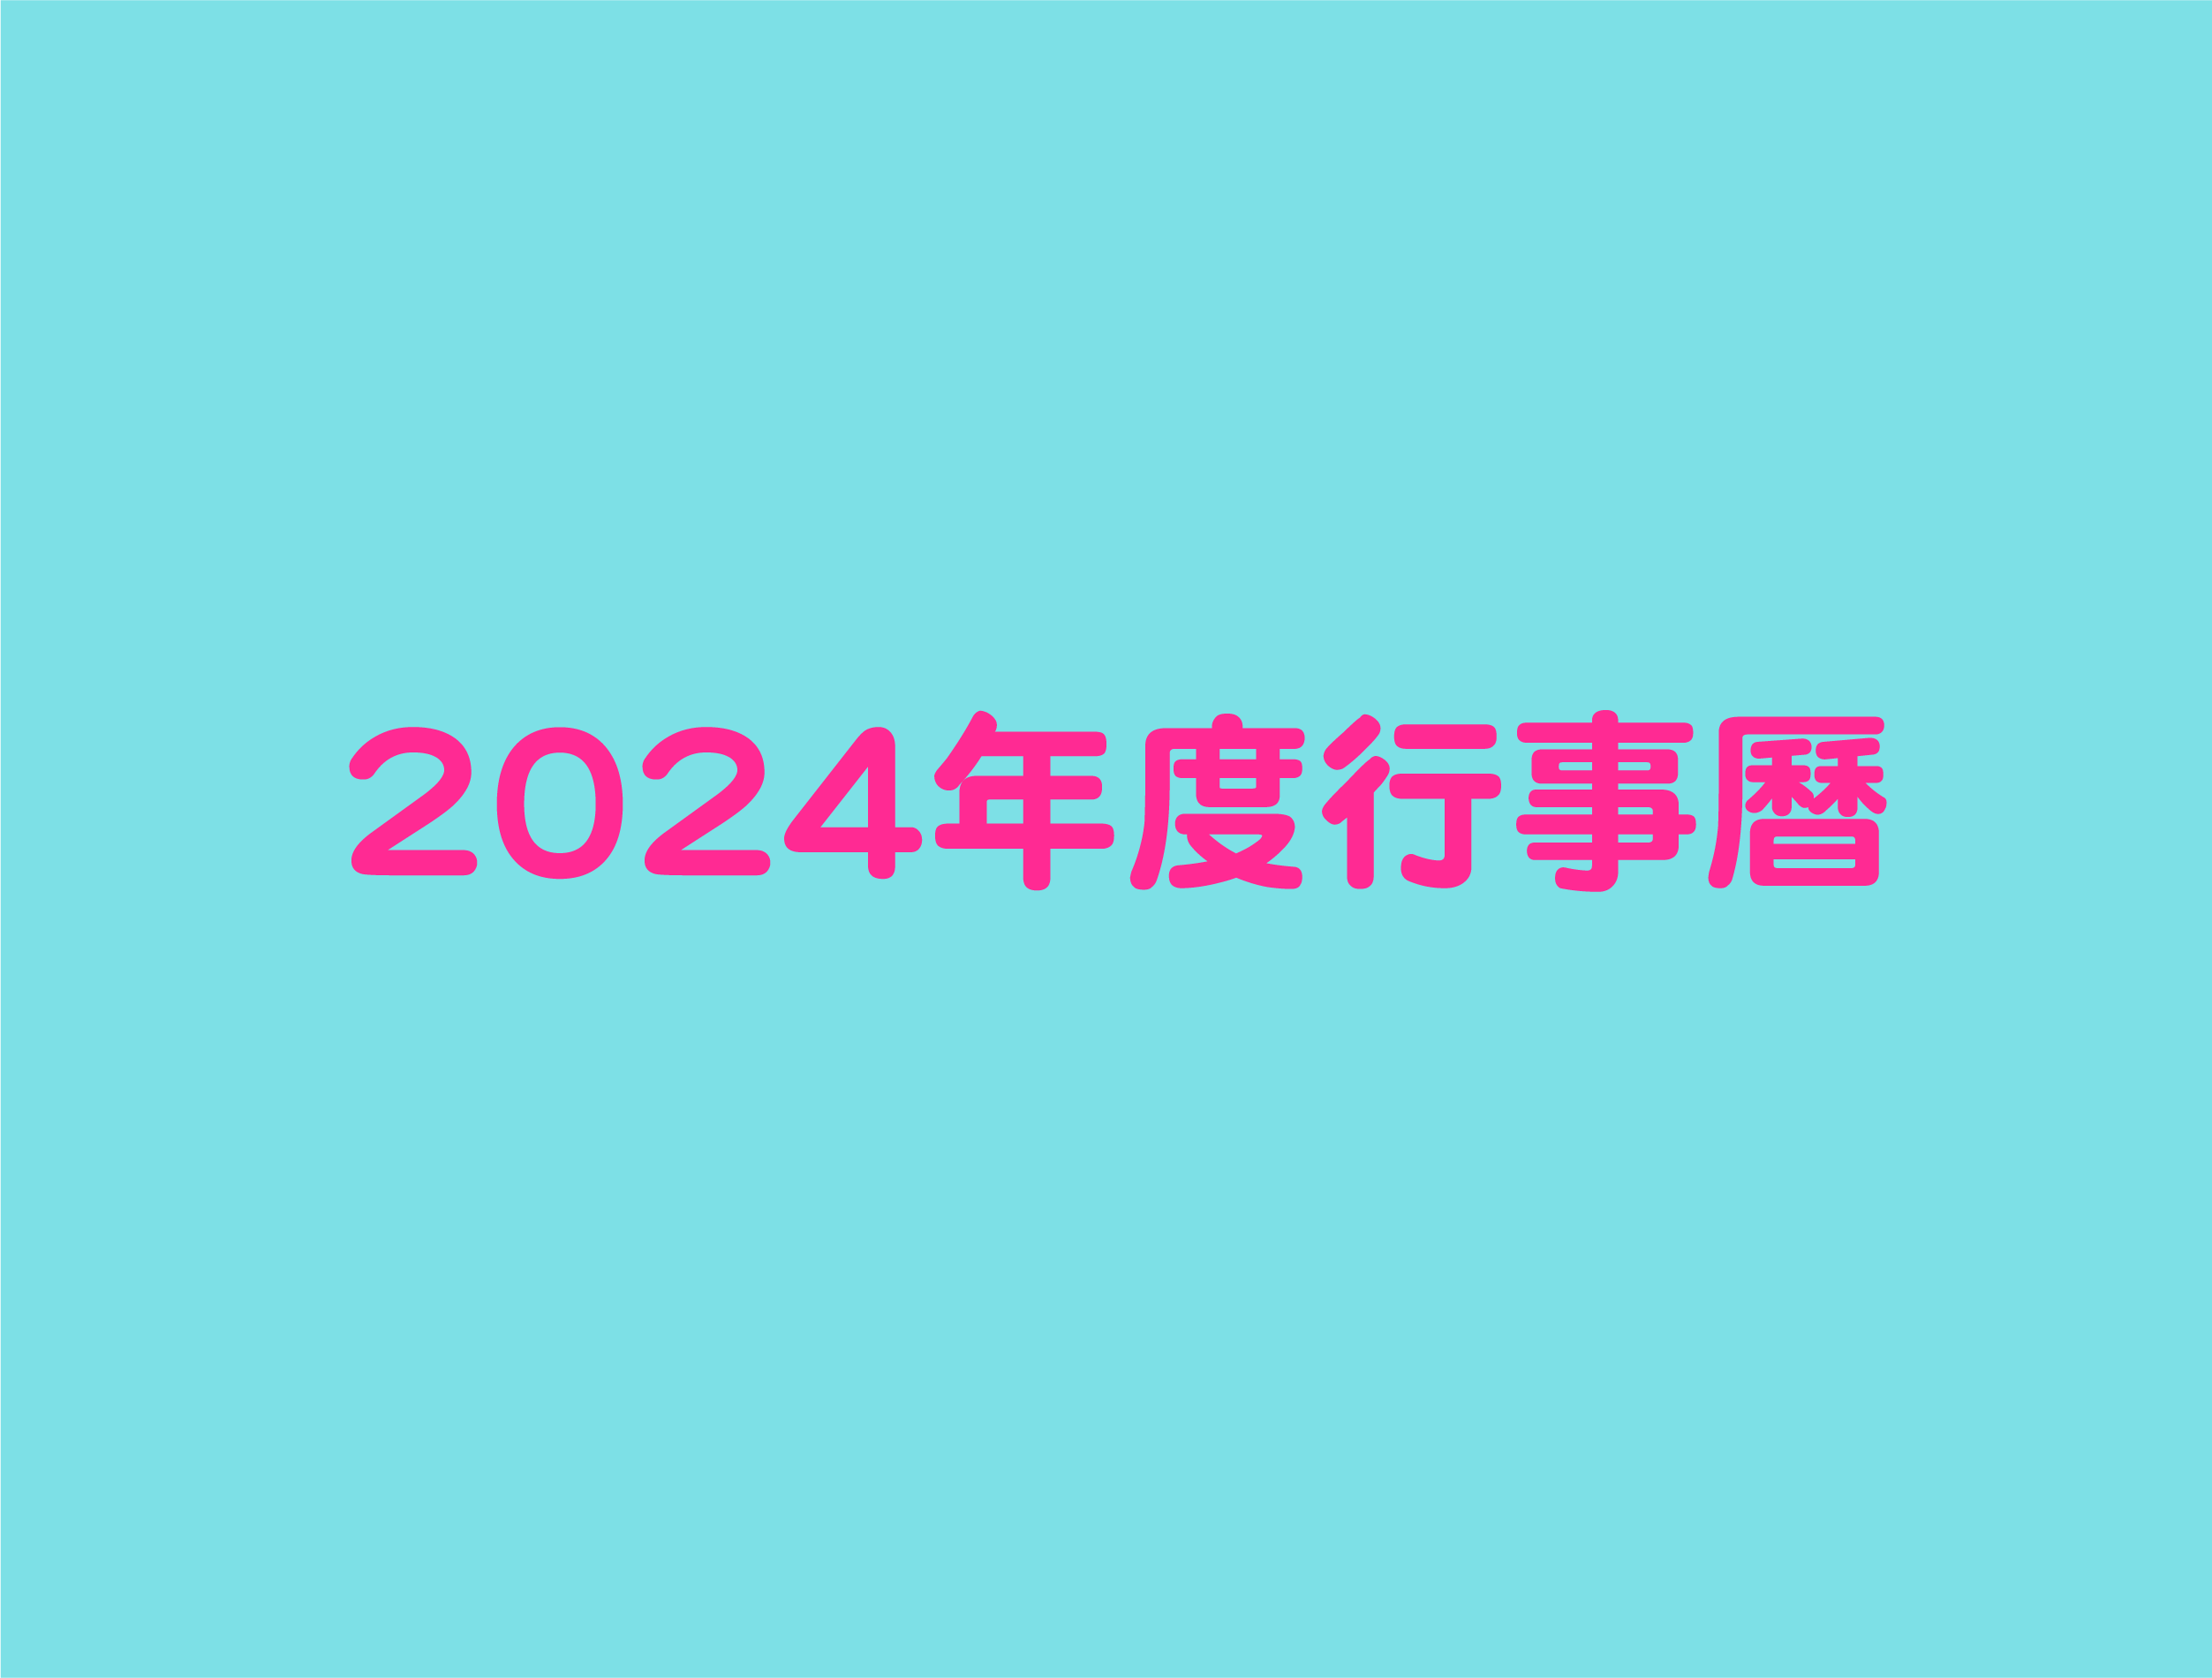 2024年度行事曆